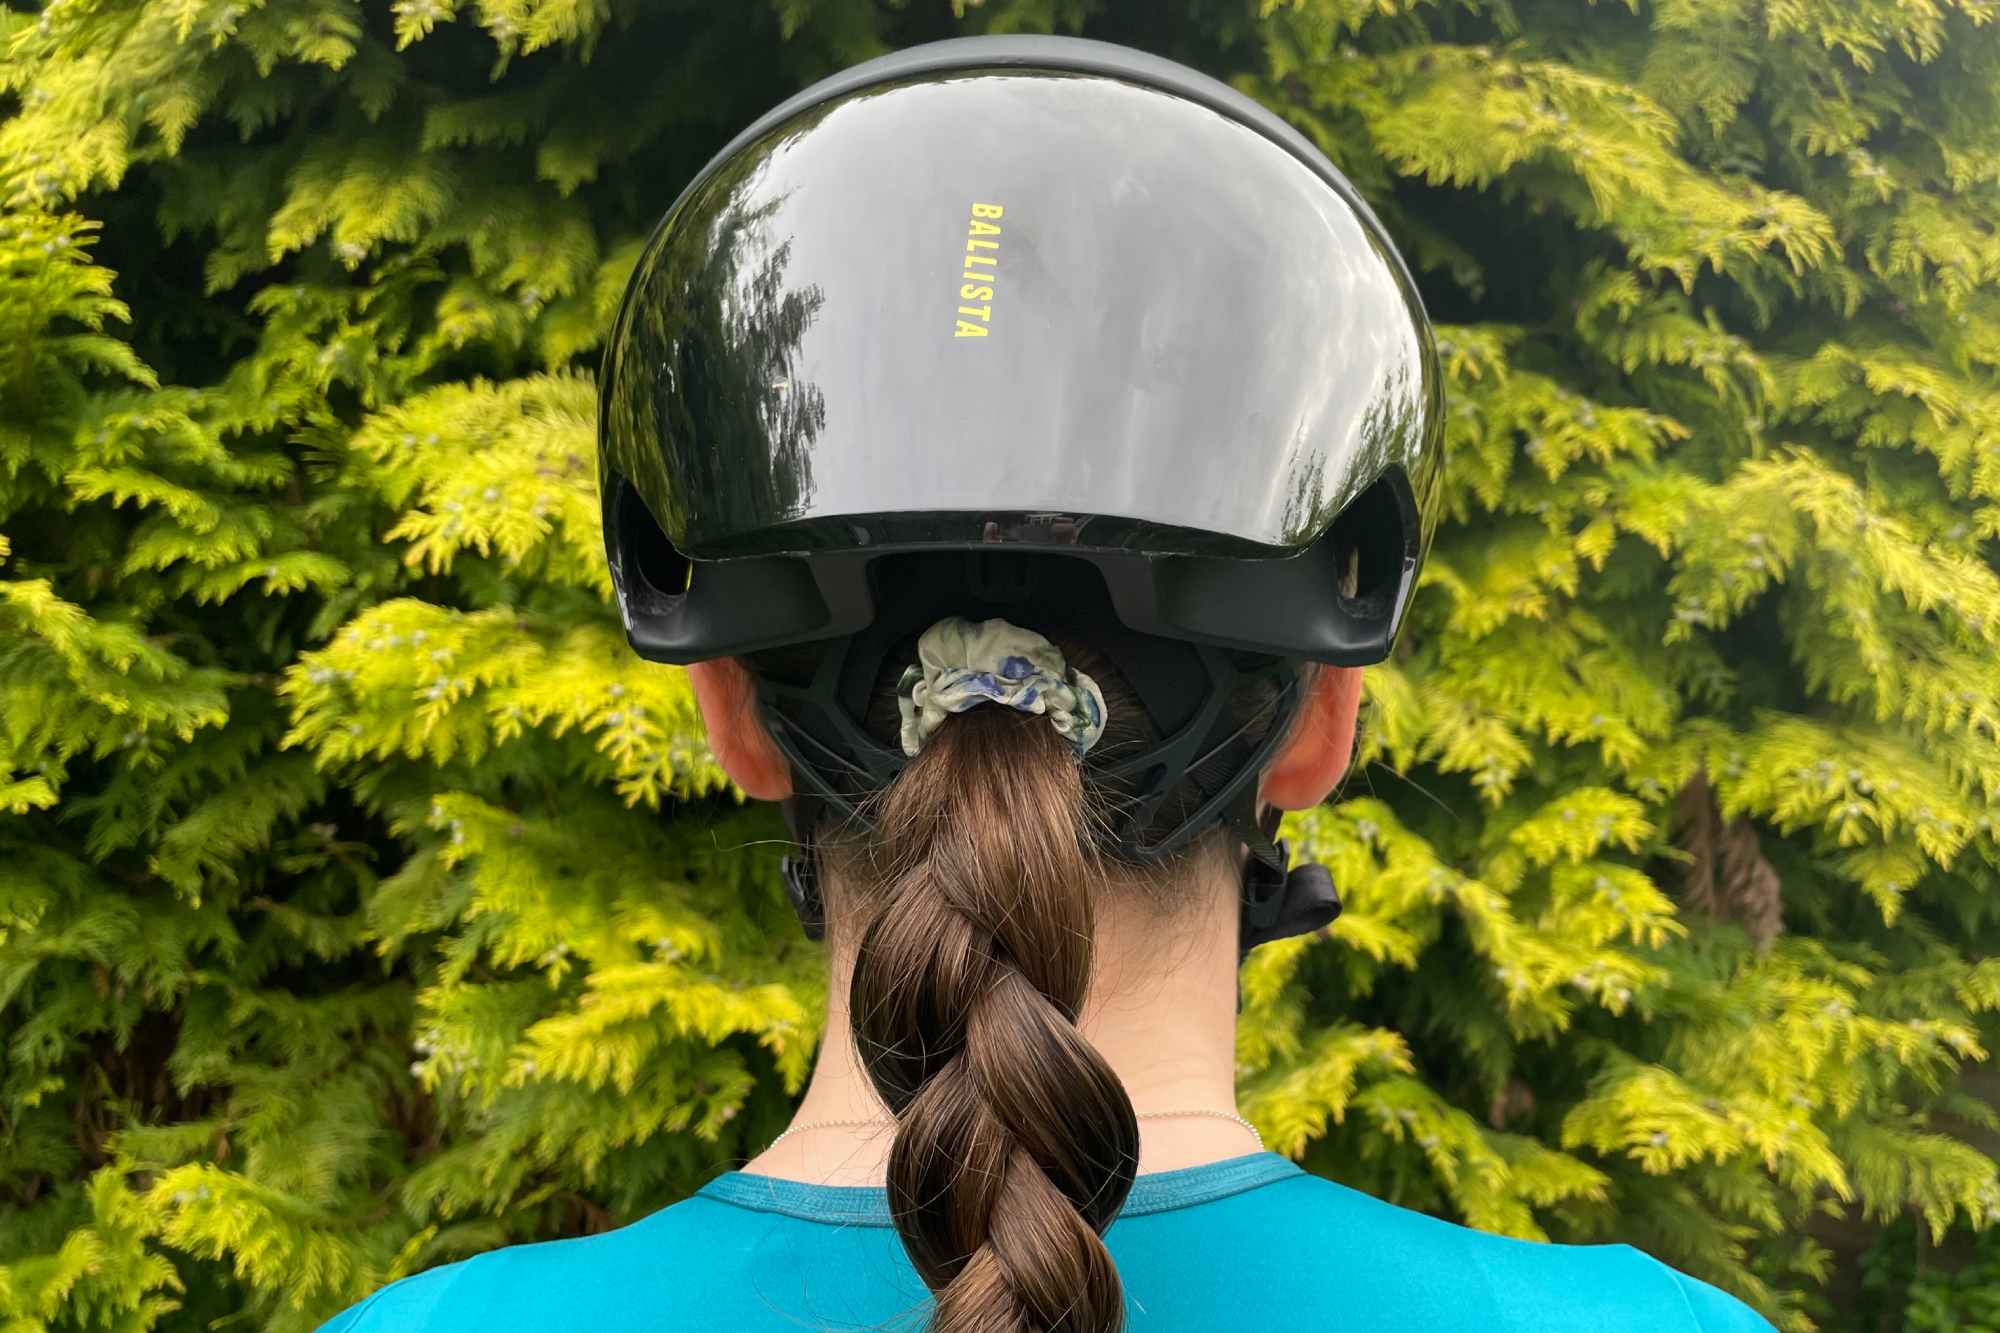 Rear view of the Trek Ballista MIPS road bike helmet